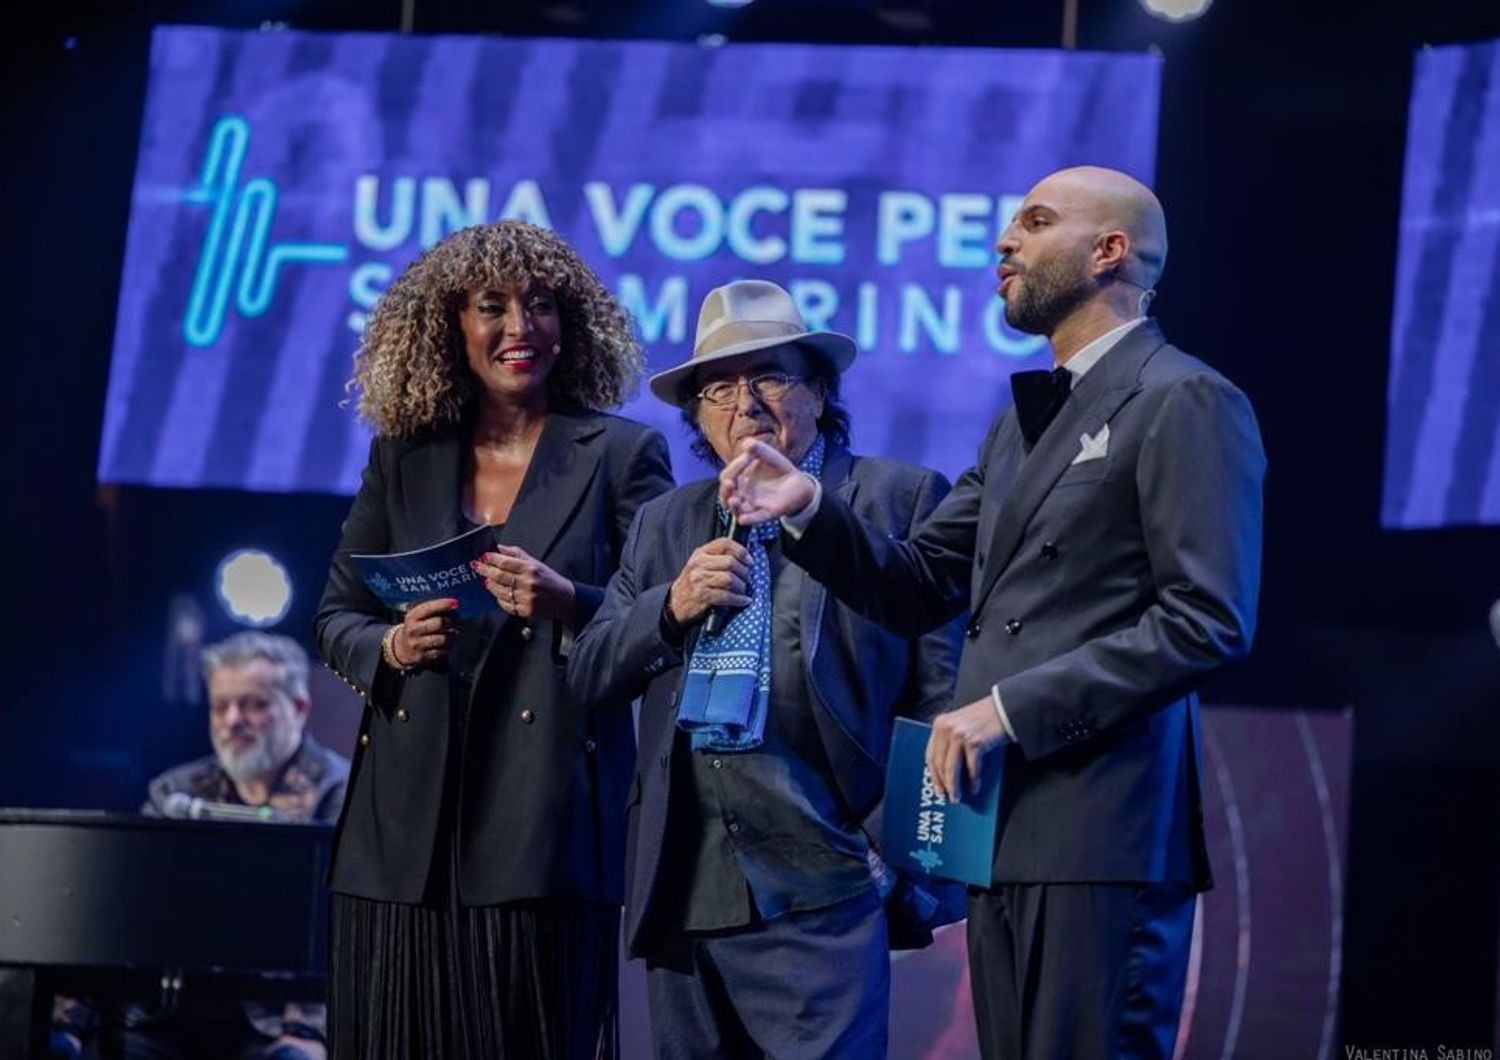 eurovision una voce per san marino